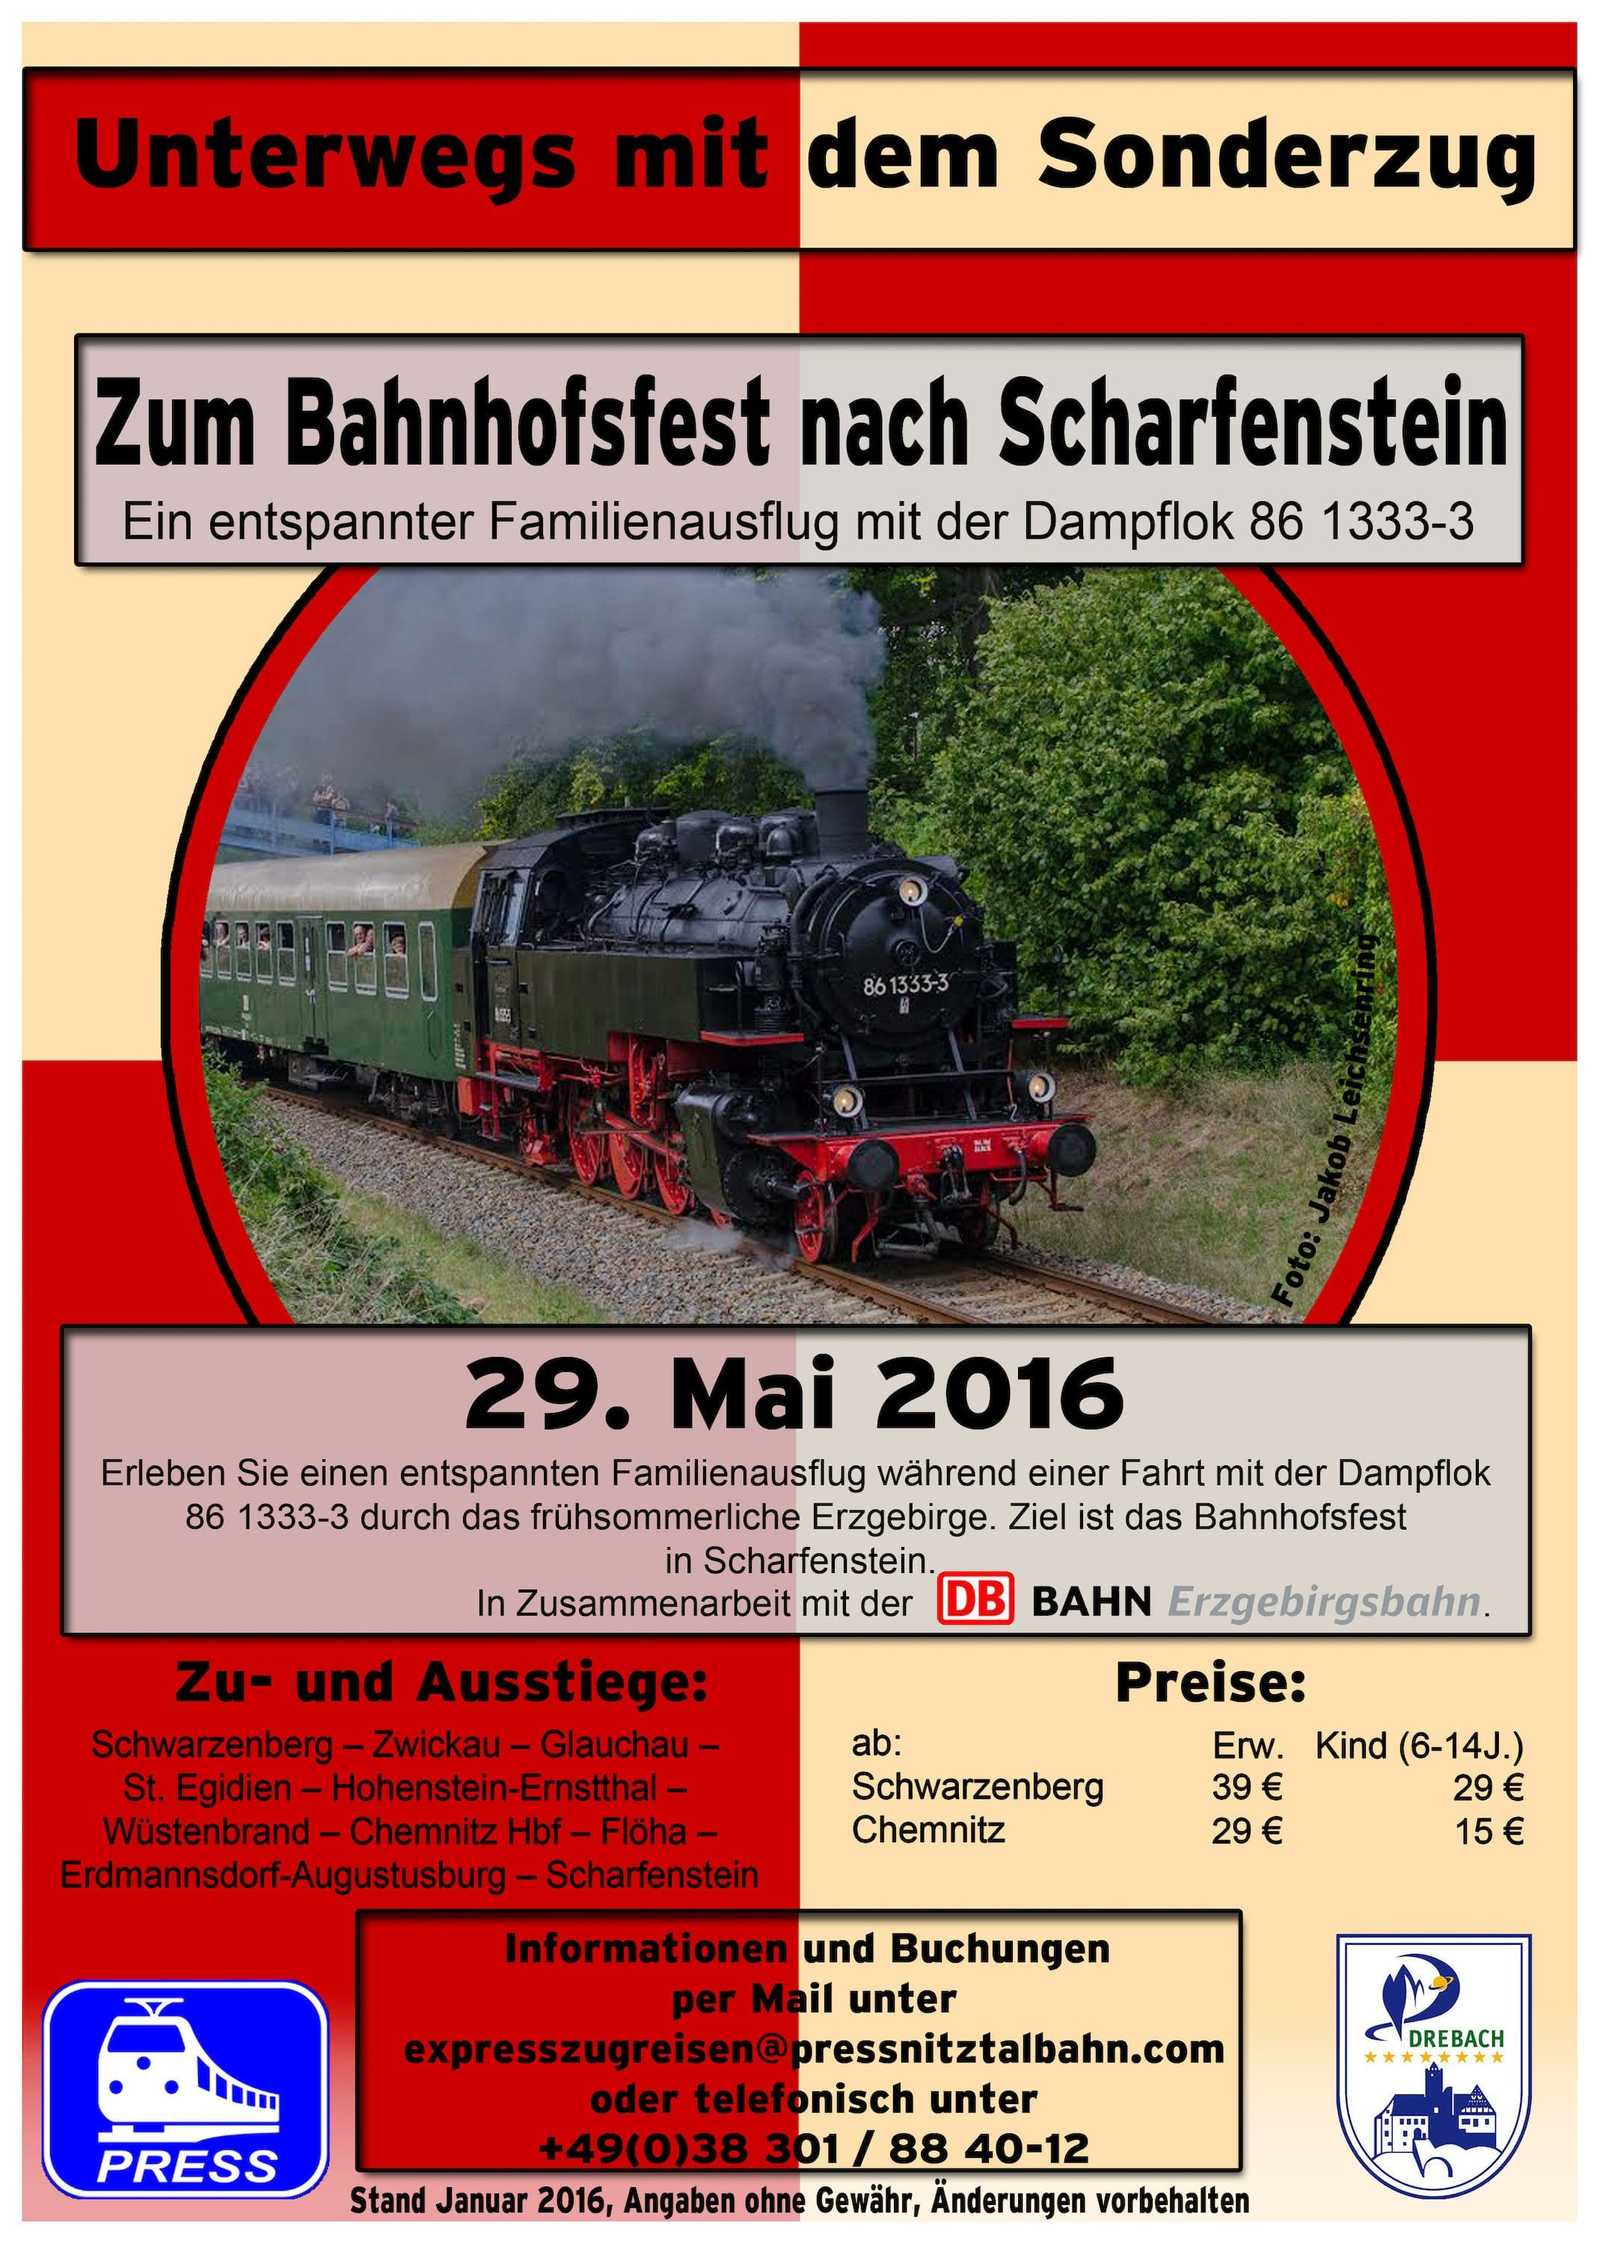 Veranstaltungsankündigung "Zum Bahnhofsfest nach Scharfenstein"